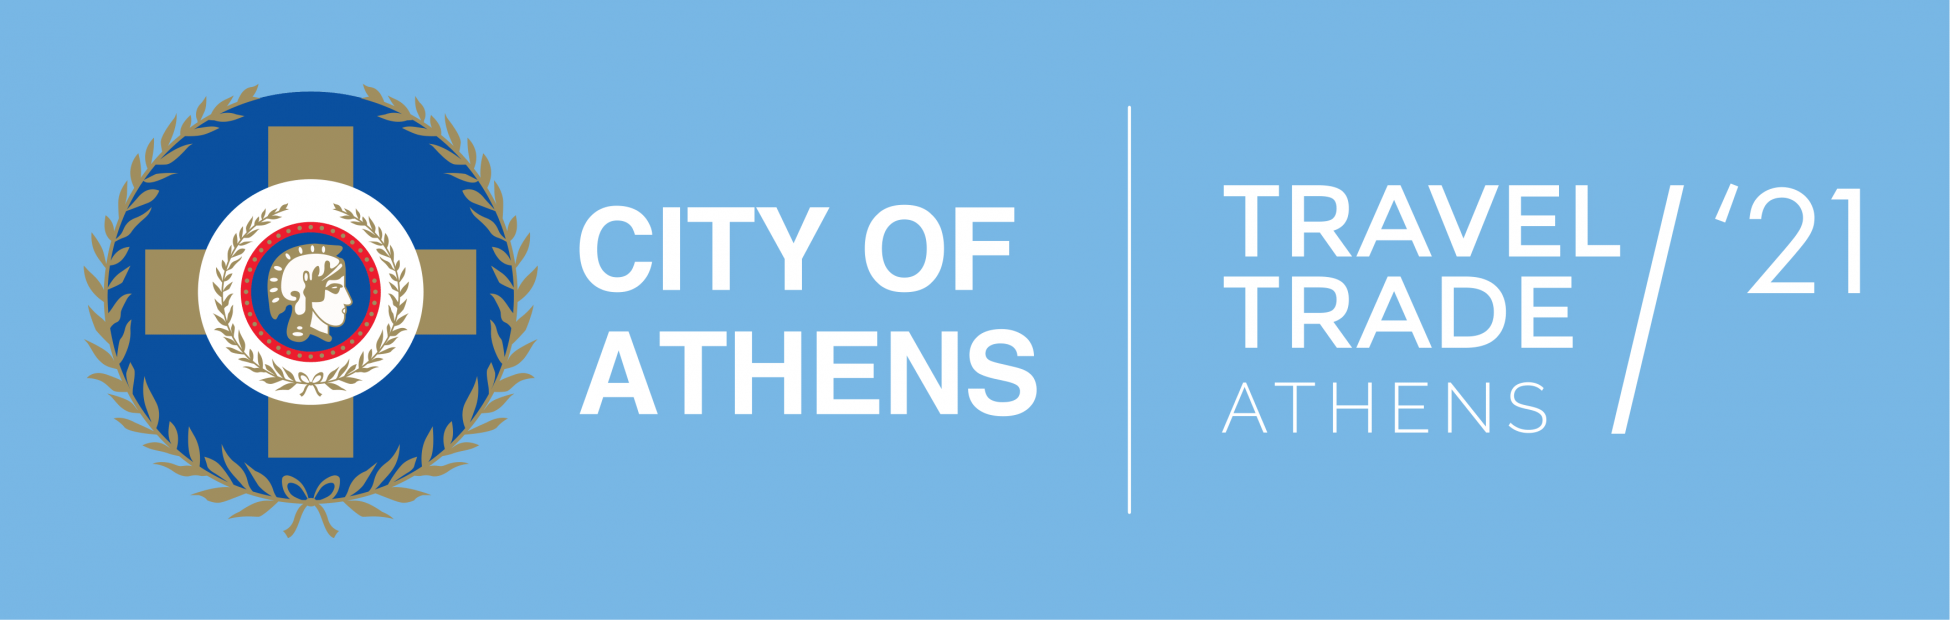 Στις 19 και 20 Απριλίου 2021 το Travel Trade Athens